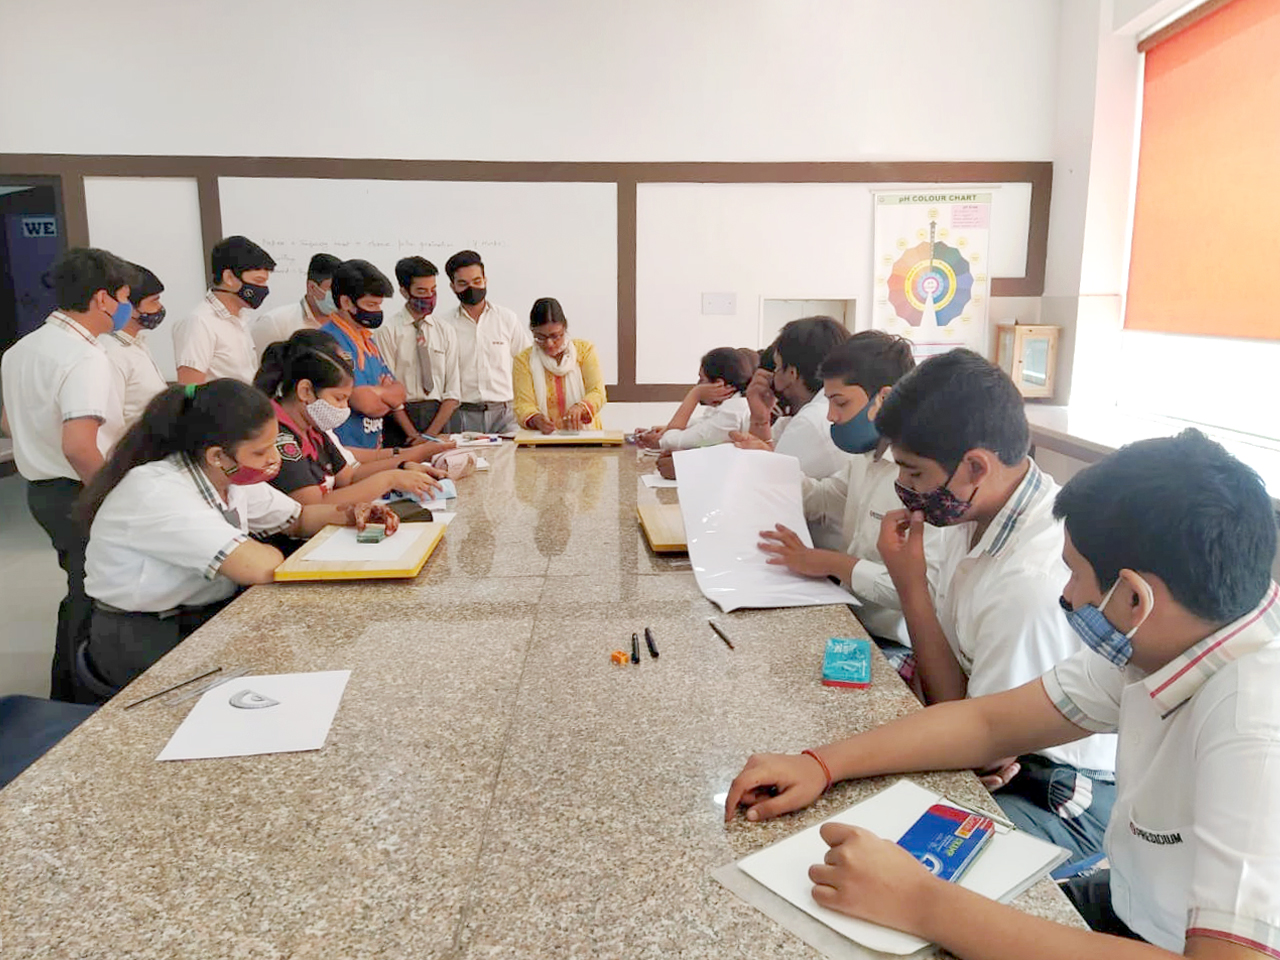 Presidium Rajnagar, PRESIDIANS STUDY THE PHENOMENA OF REFRACTION!